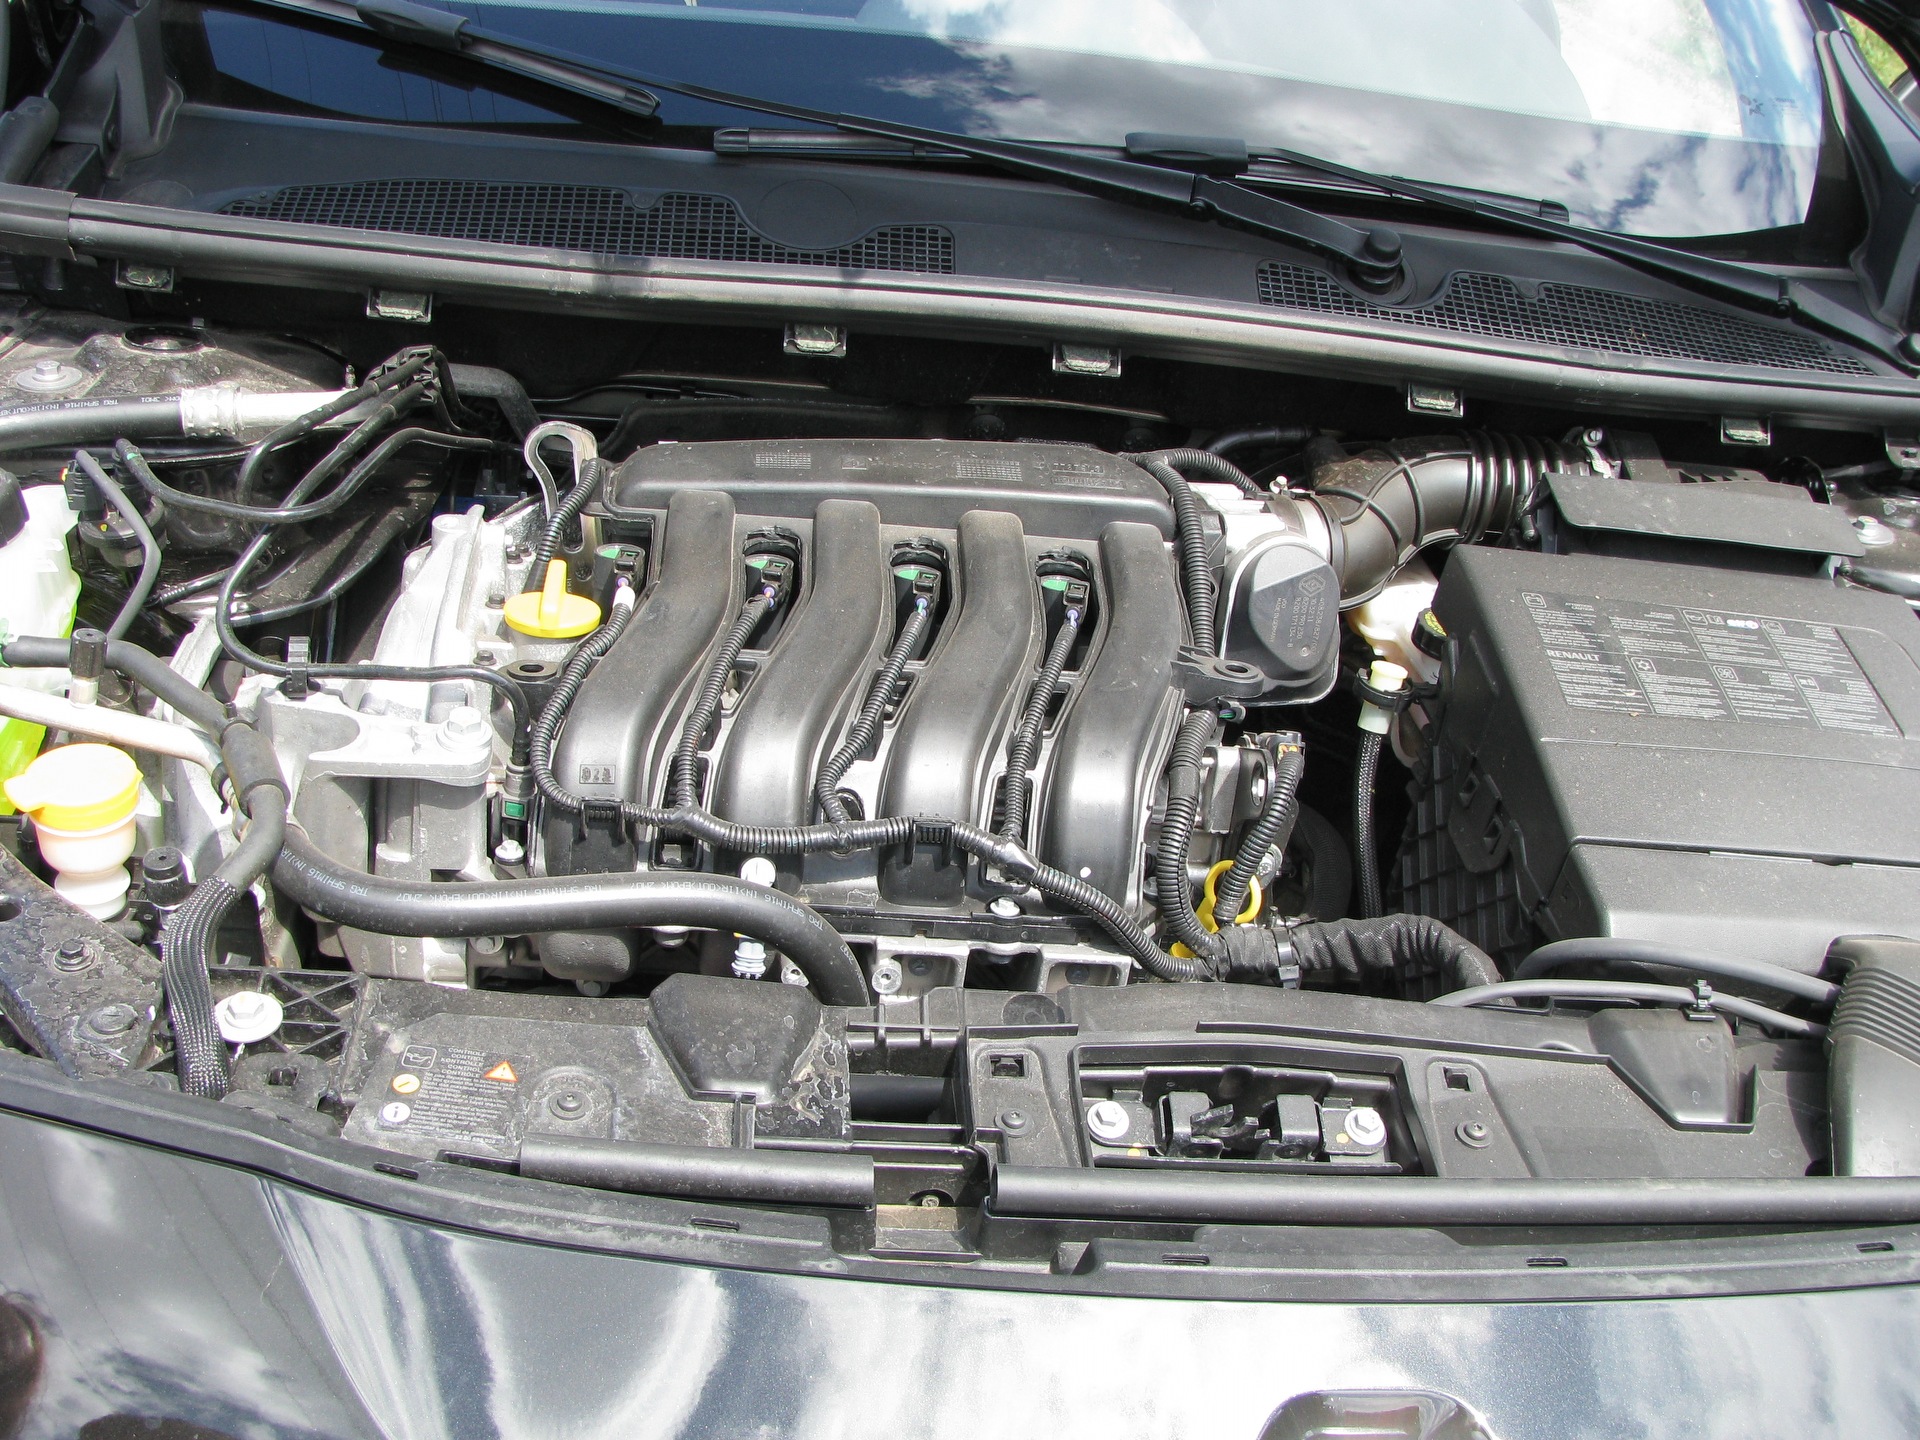 Купить двигатель рено флюенс 1.6. Двигатель Рено Флюенс 1.6. Двигатель Рено Флюенс 1.6 2014. Рено Флюенс 1,6 2012 года двигатель. Рено Флюенс 2.0 двигатель.